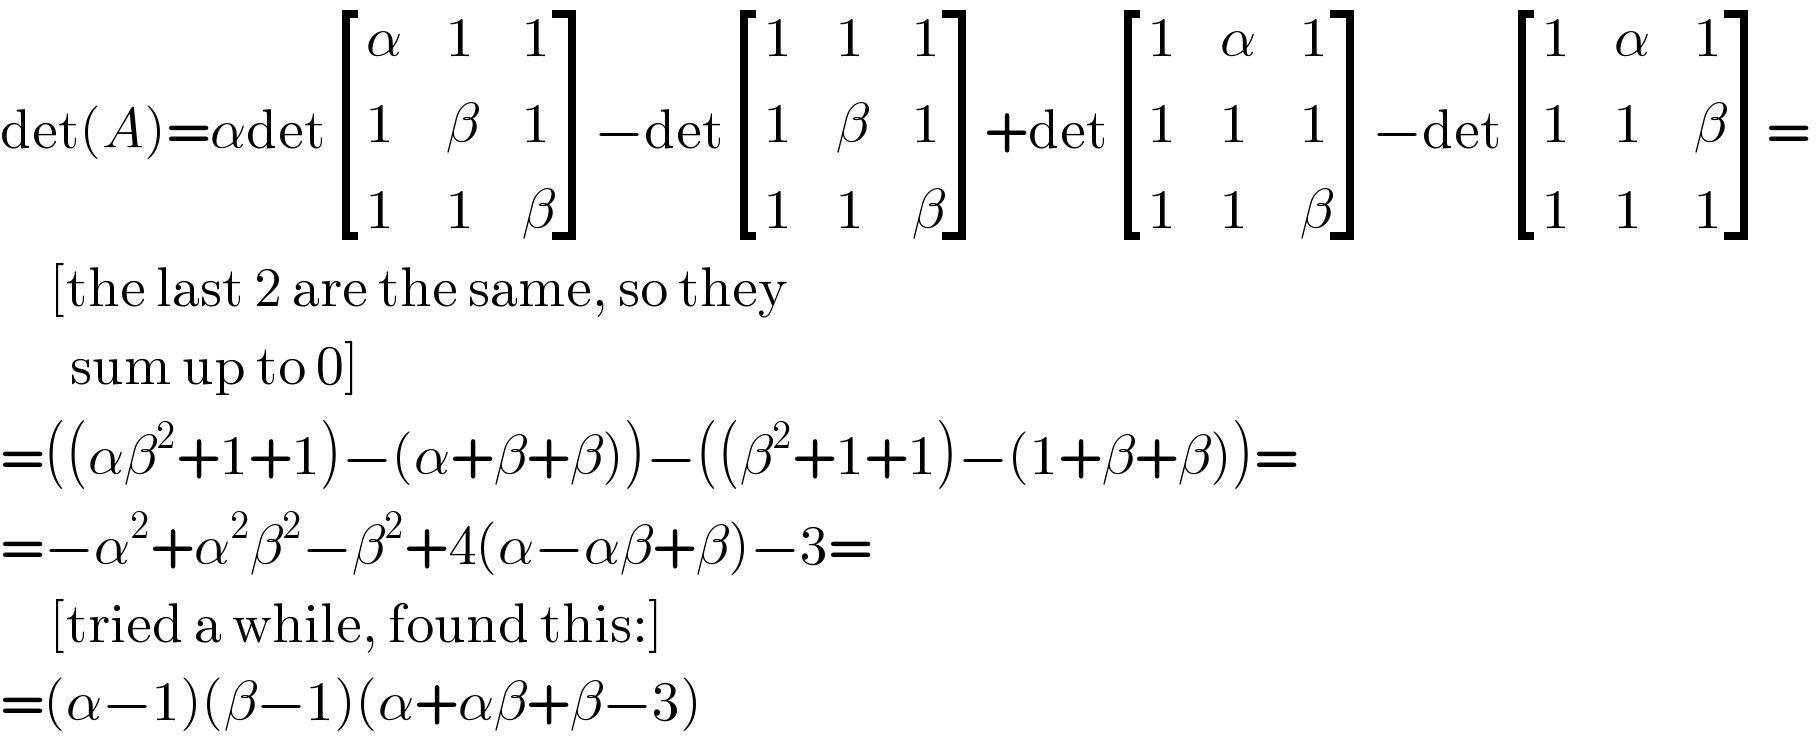 det(A)=αdet [(α,1,1),(1,β,1),(1,1,β) ]−det [(1,1,1),(1,β,1),(1,1,β) ]+det [(1,α,1),(1,1,1),(1,1,β) ]−det [(1,α,1),(1,1,β),(1,1,1) ]=       [the last 2 are the same, so they         sum up to 0]  =((αβ^2 +1+1)−(α+β+β))−((β^2 +1+1)−(1+β+β))=  =−α^2 +α^2 β^2 −β^2 +4(α−αβ+β)−3=       [tried a while, found this:]  =(α−1)(β−1)(α+αβ+β−3)  